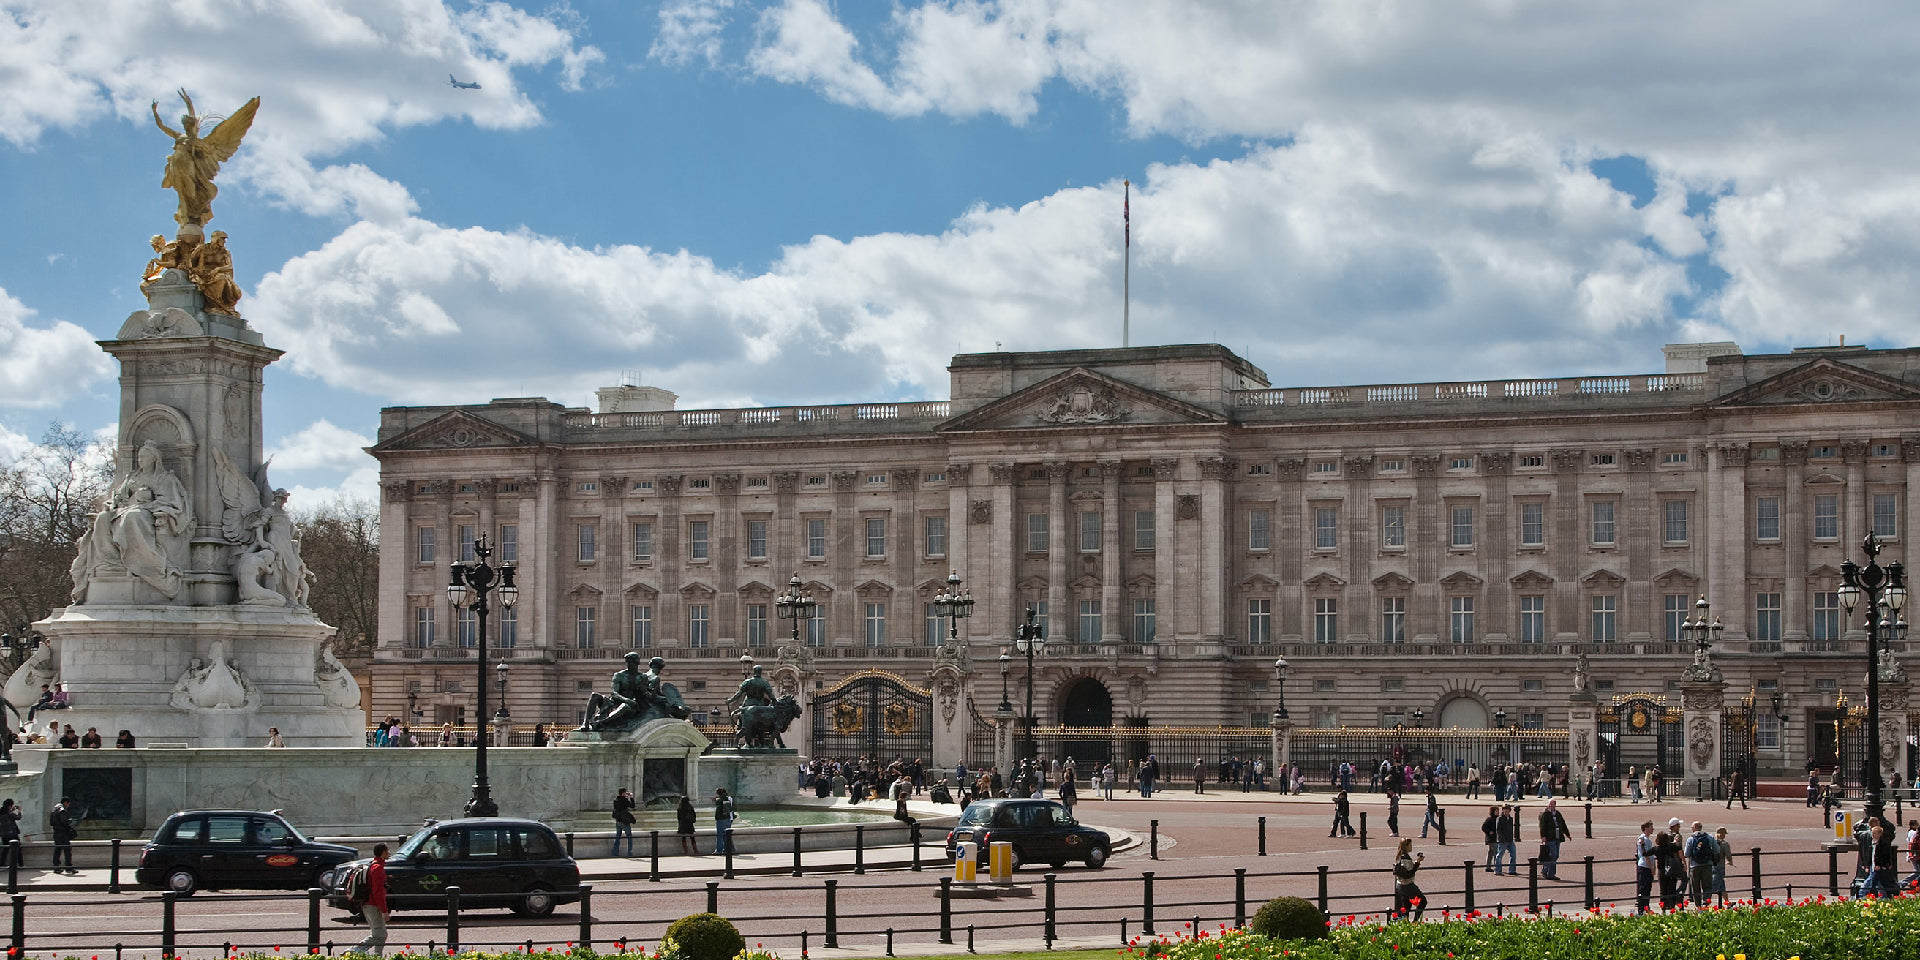 Buckingham palace